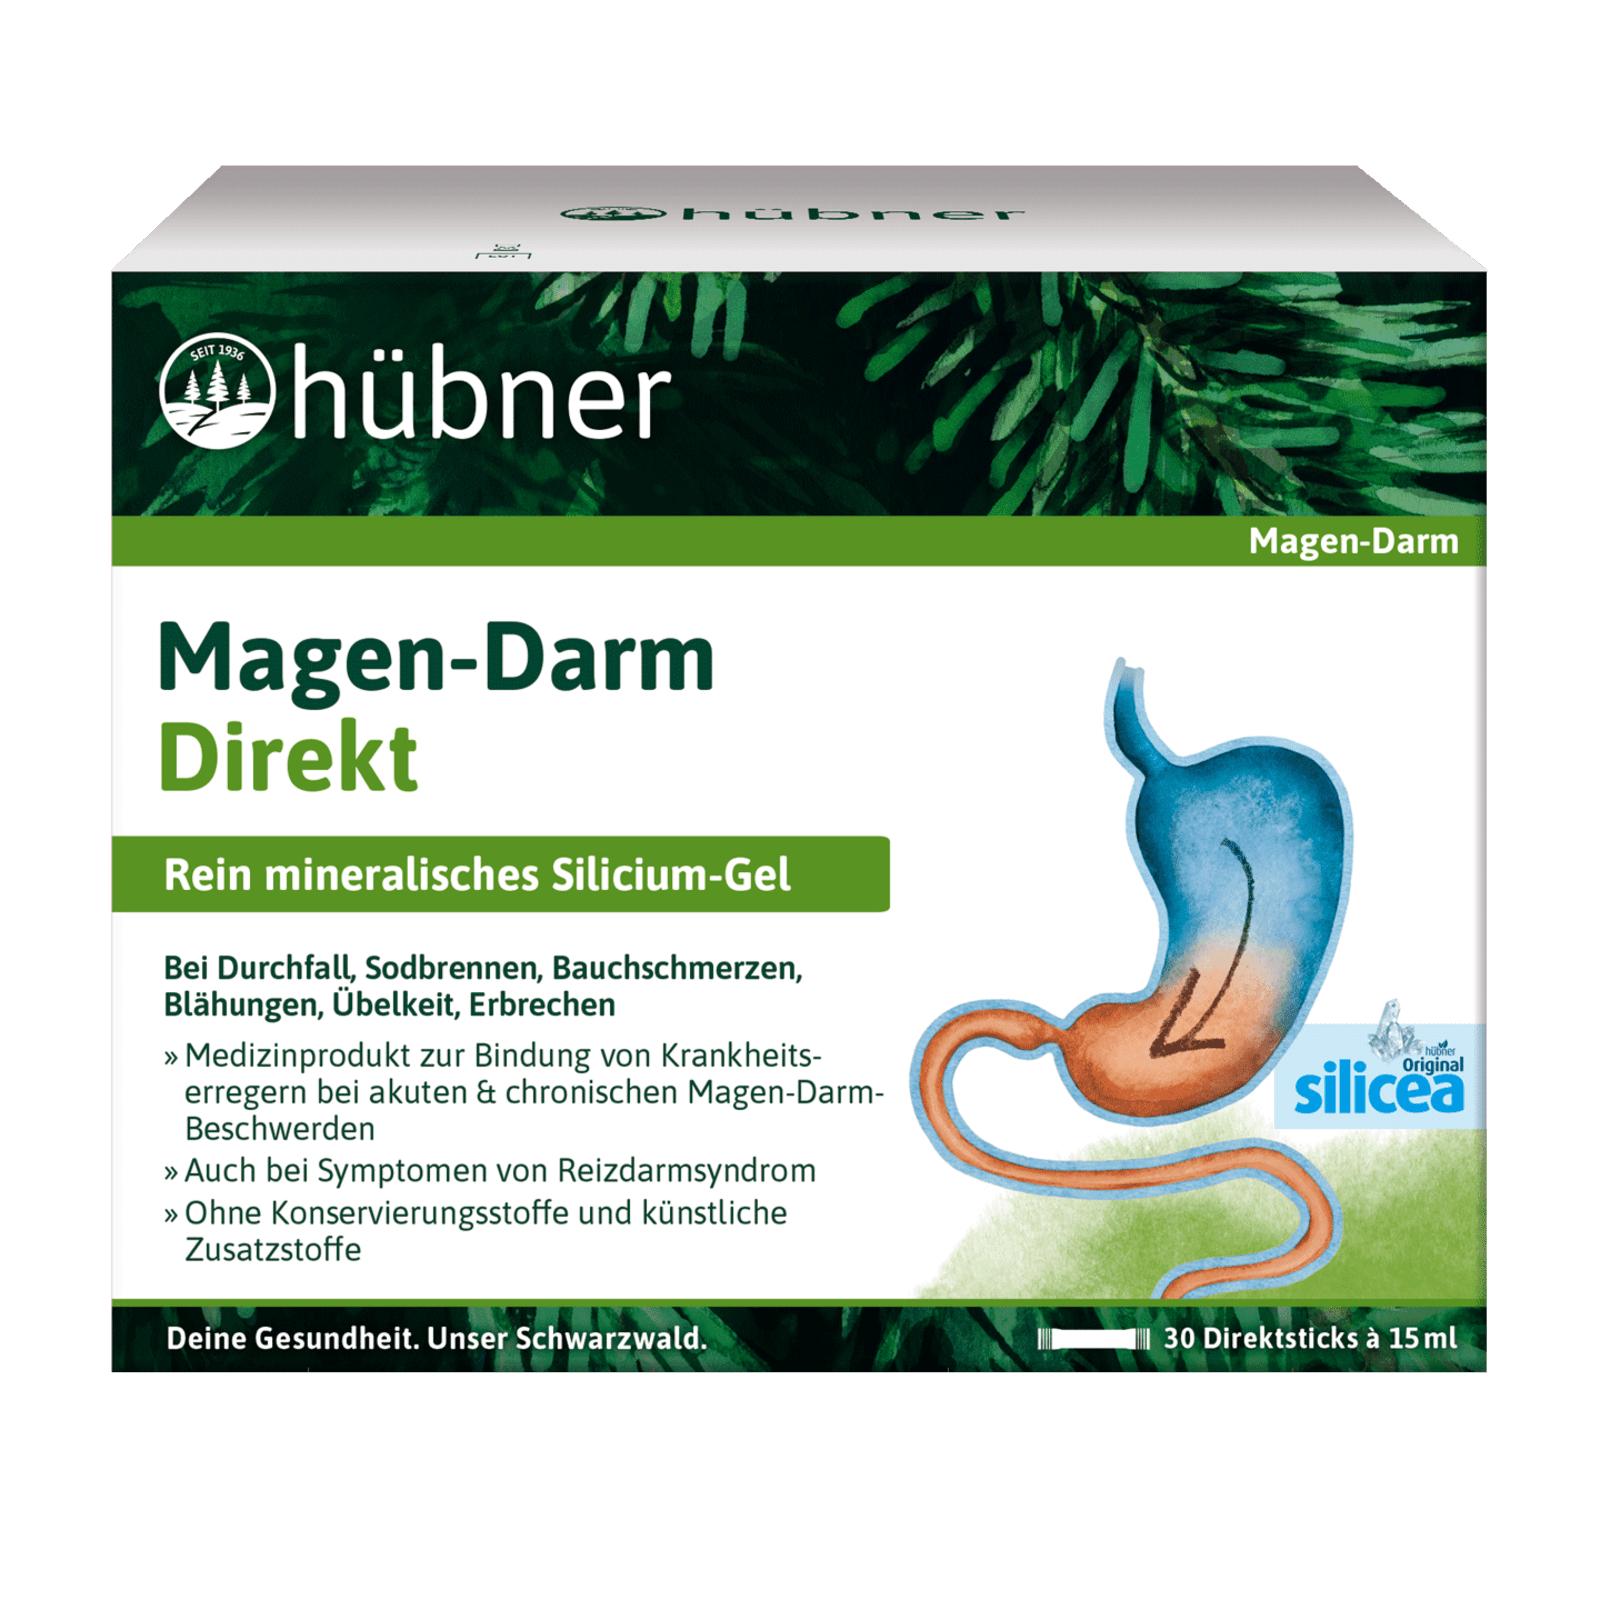 Silicea Magen Darm Direct (30x15ml) von Hübner